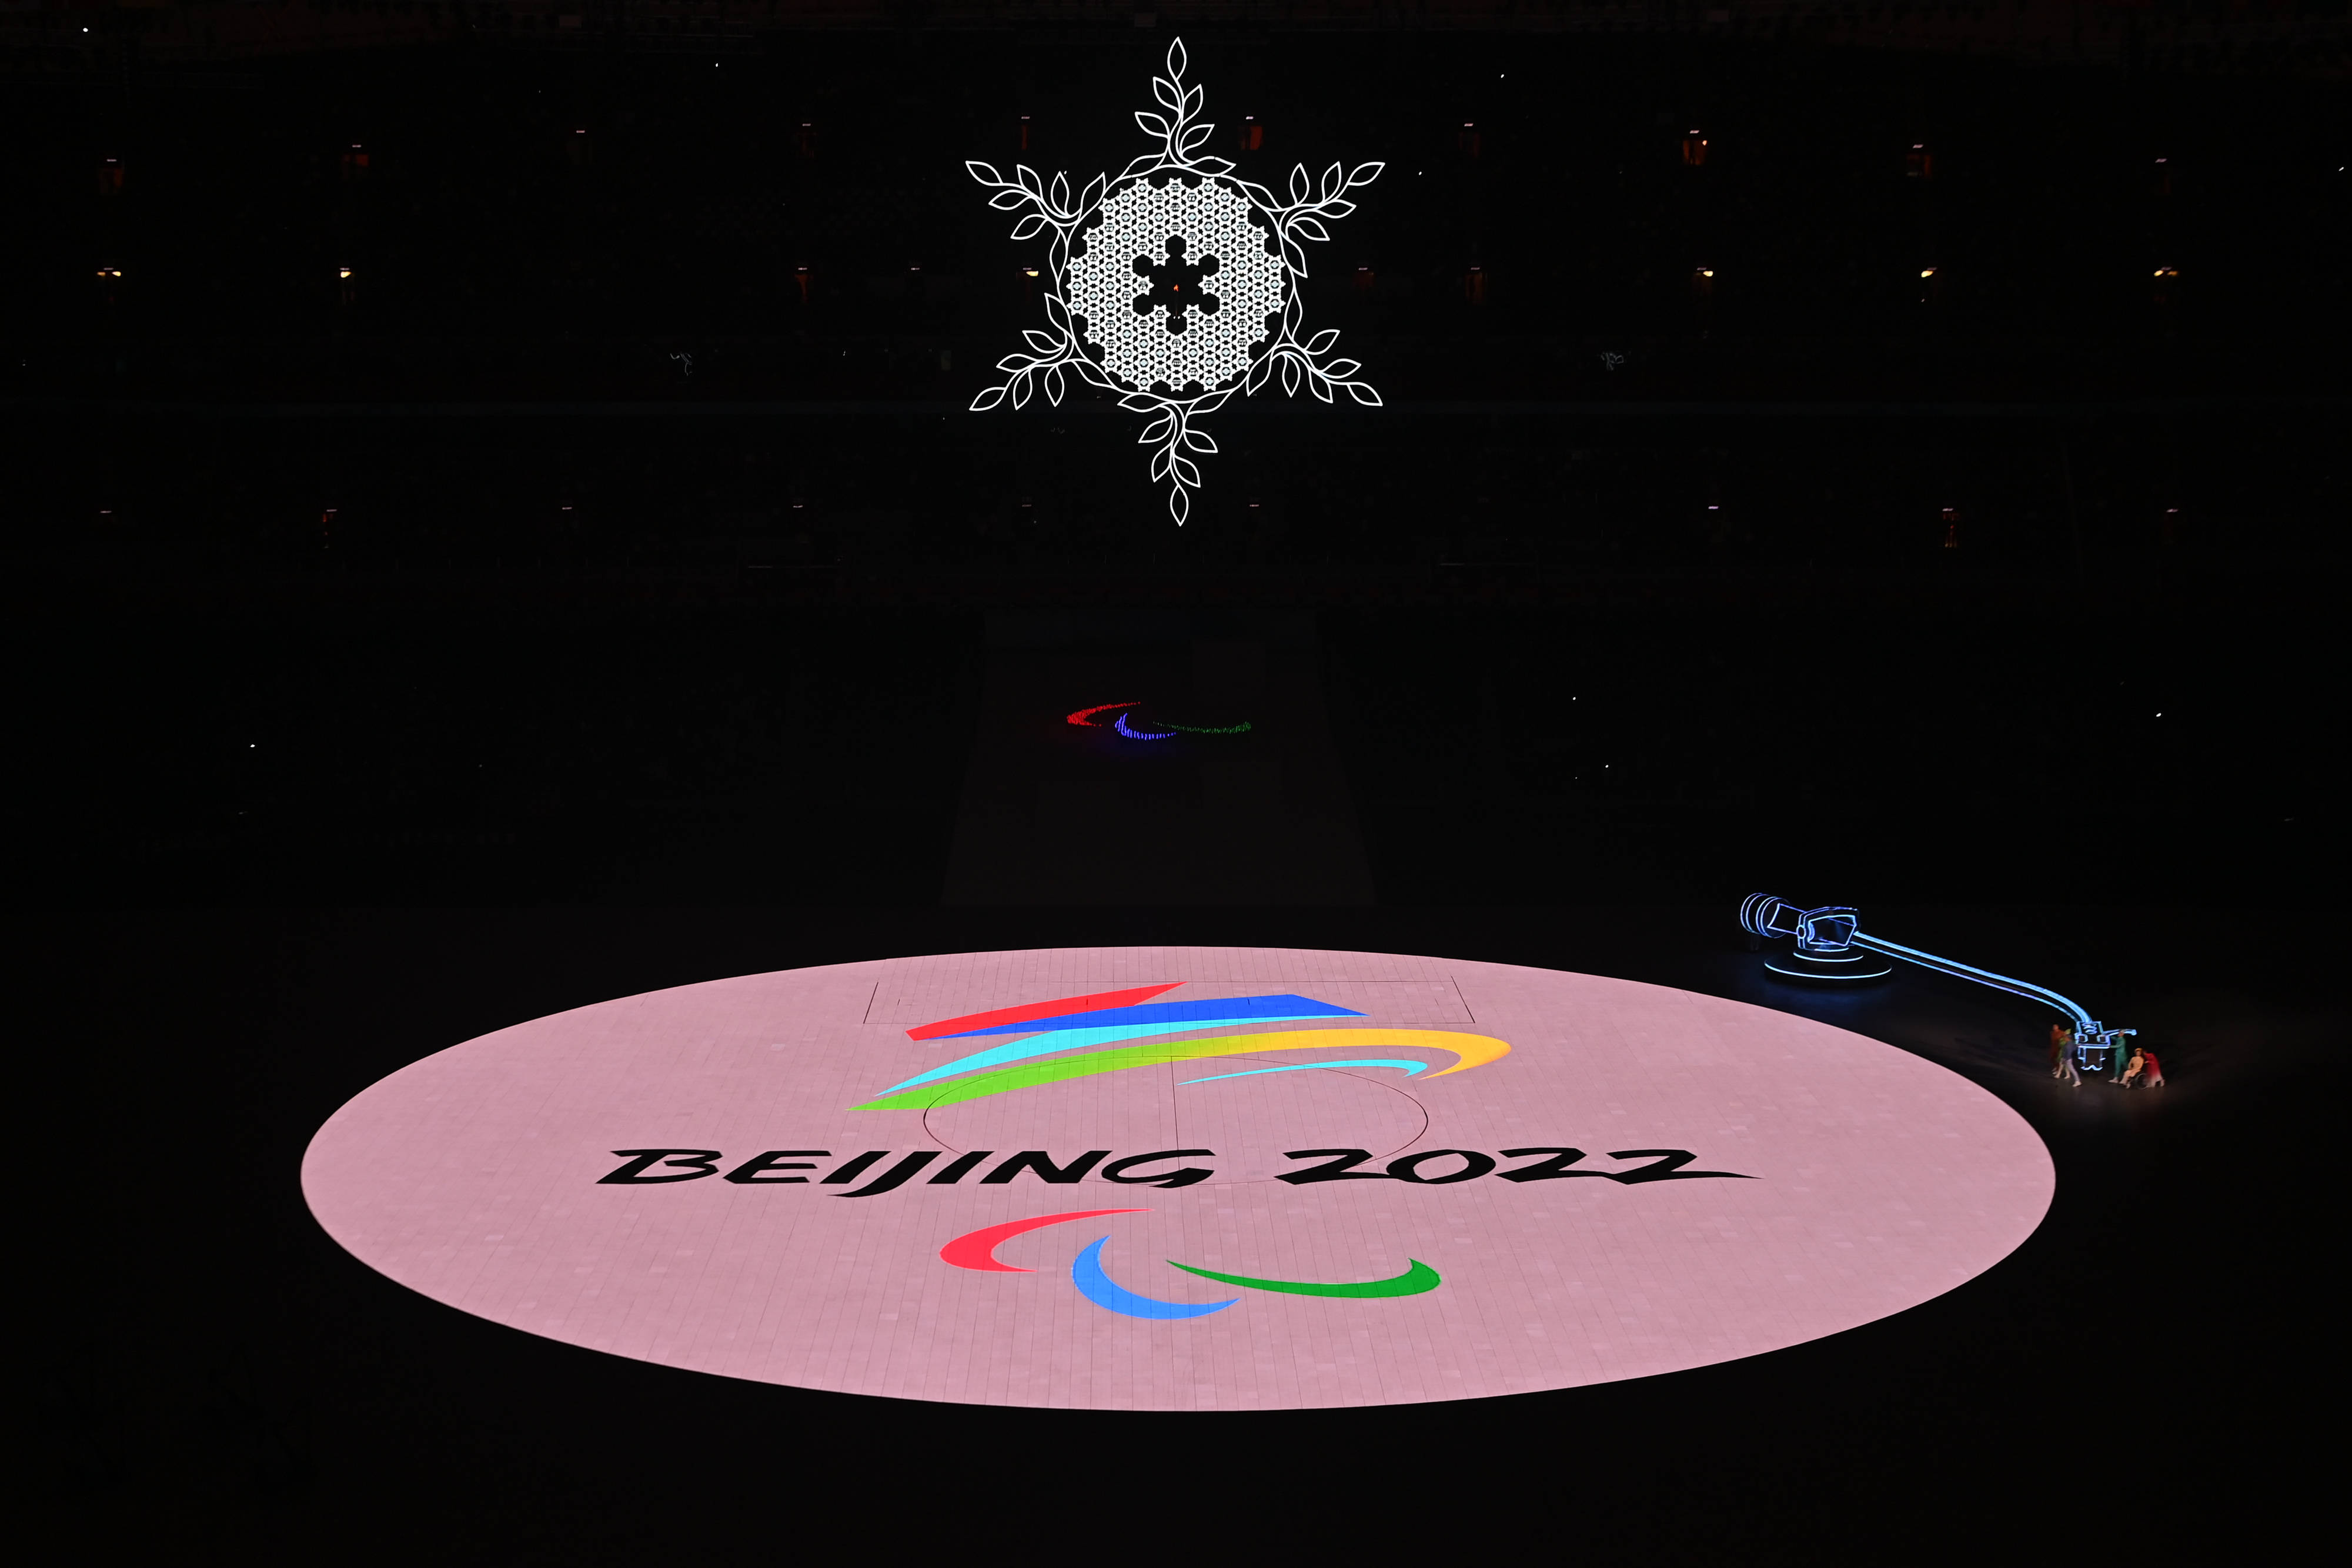 北京冬季残奥会标志图片